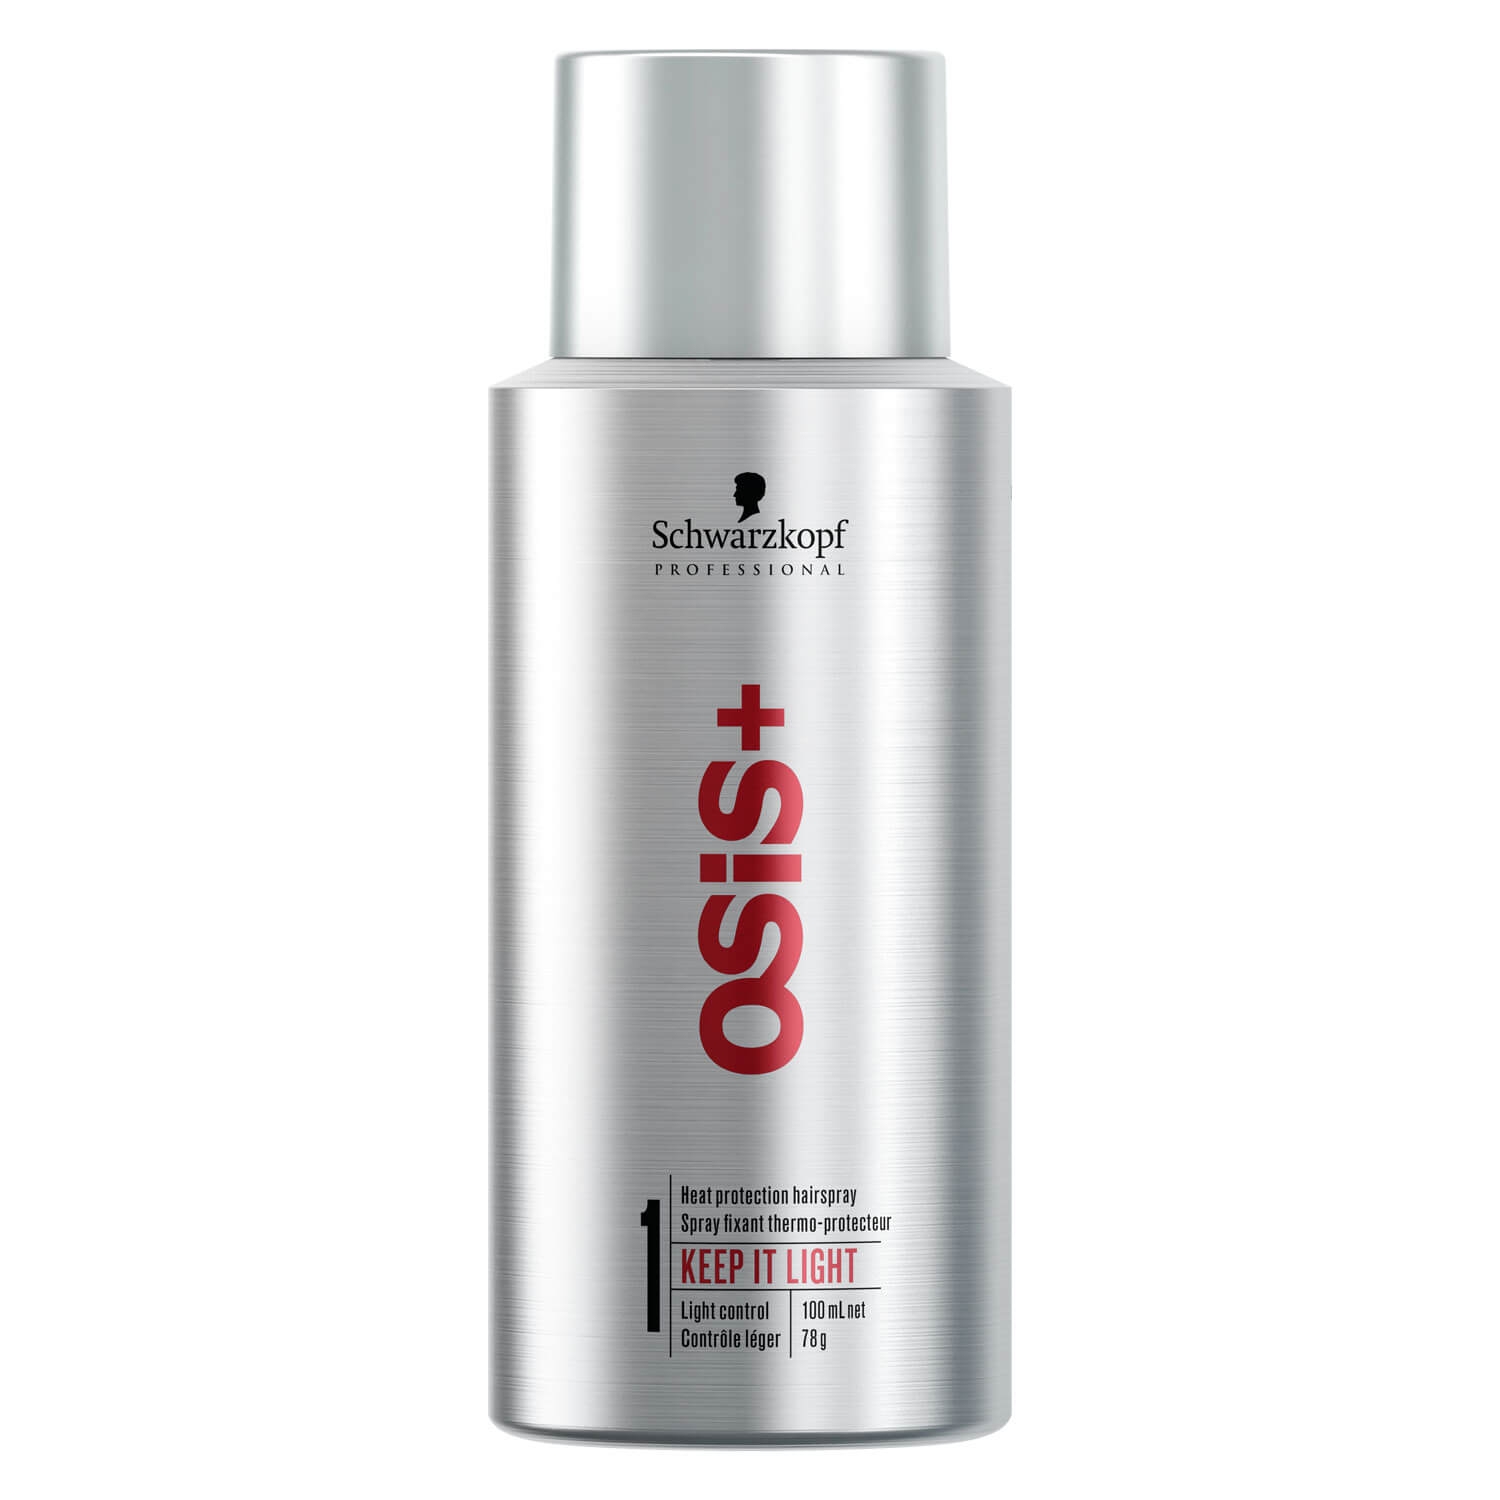 Produktbild von Osis - Keep it Light Heat Protection Hairspray